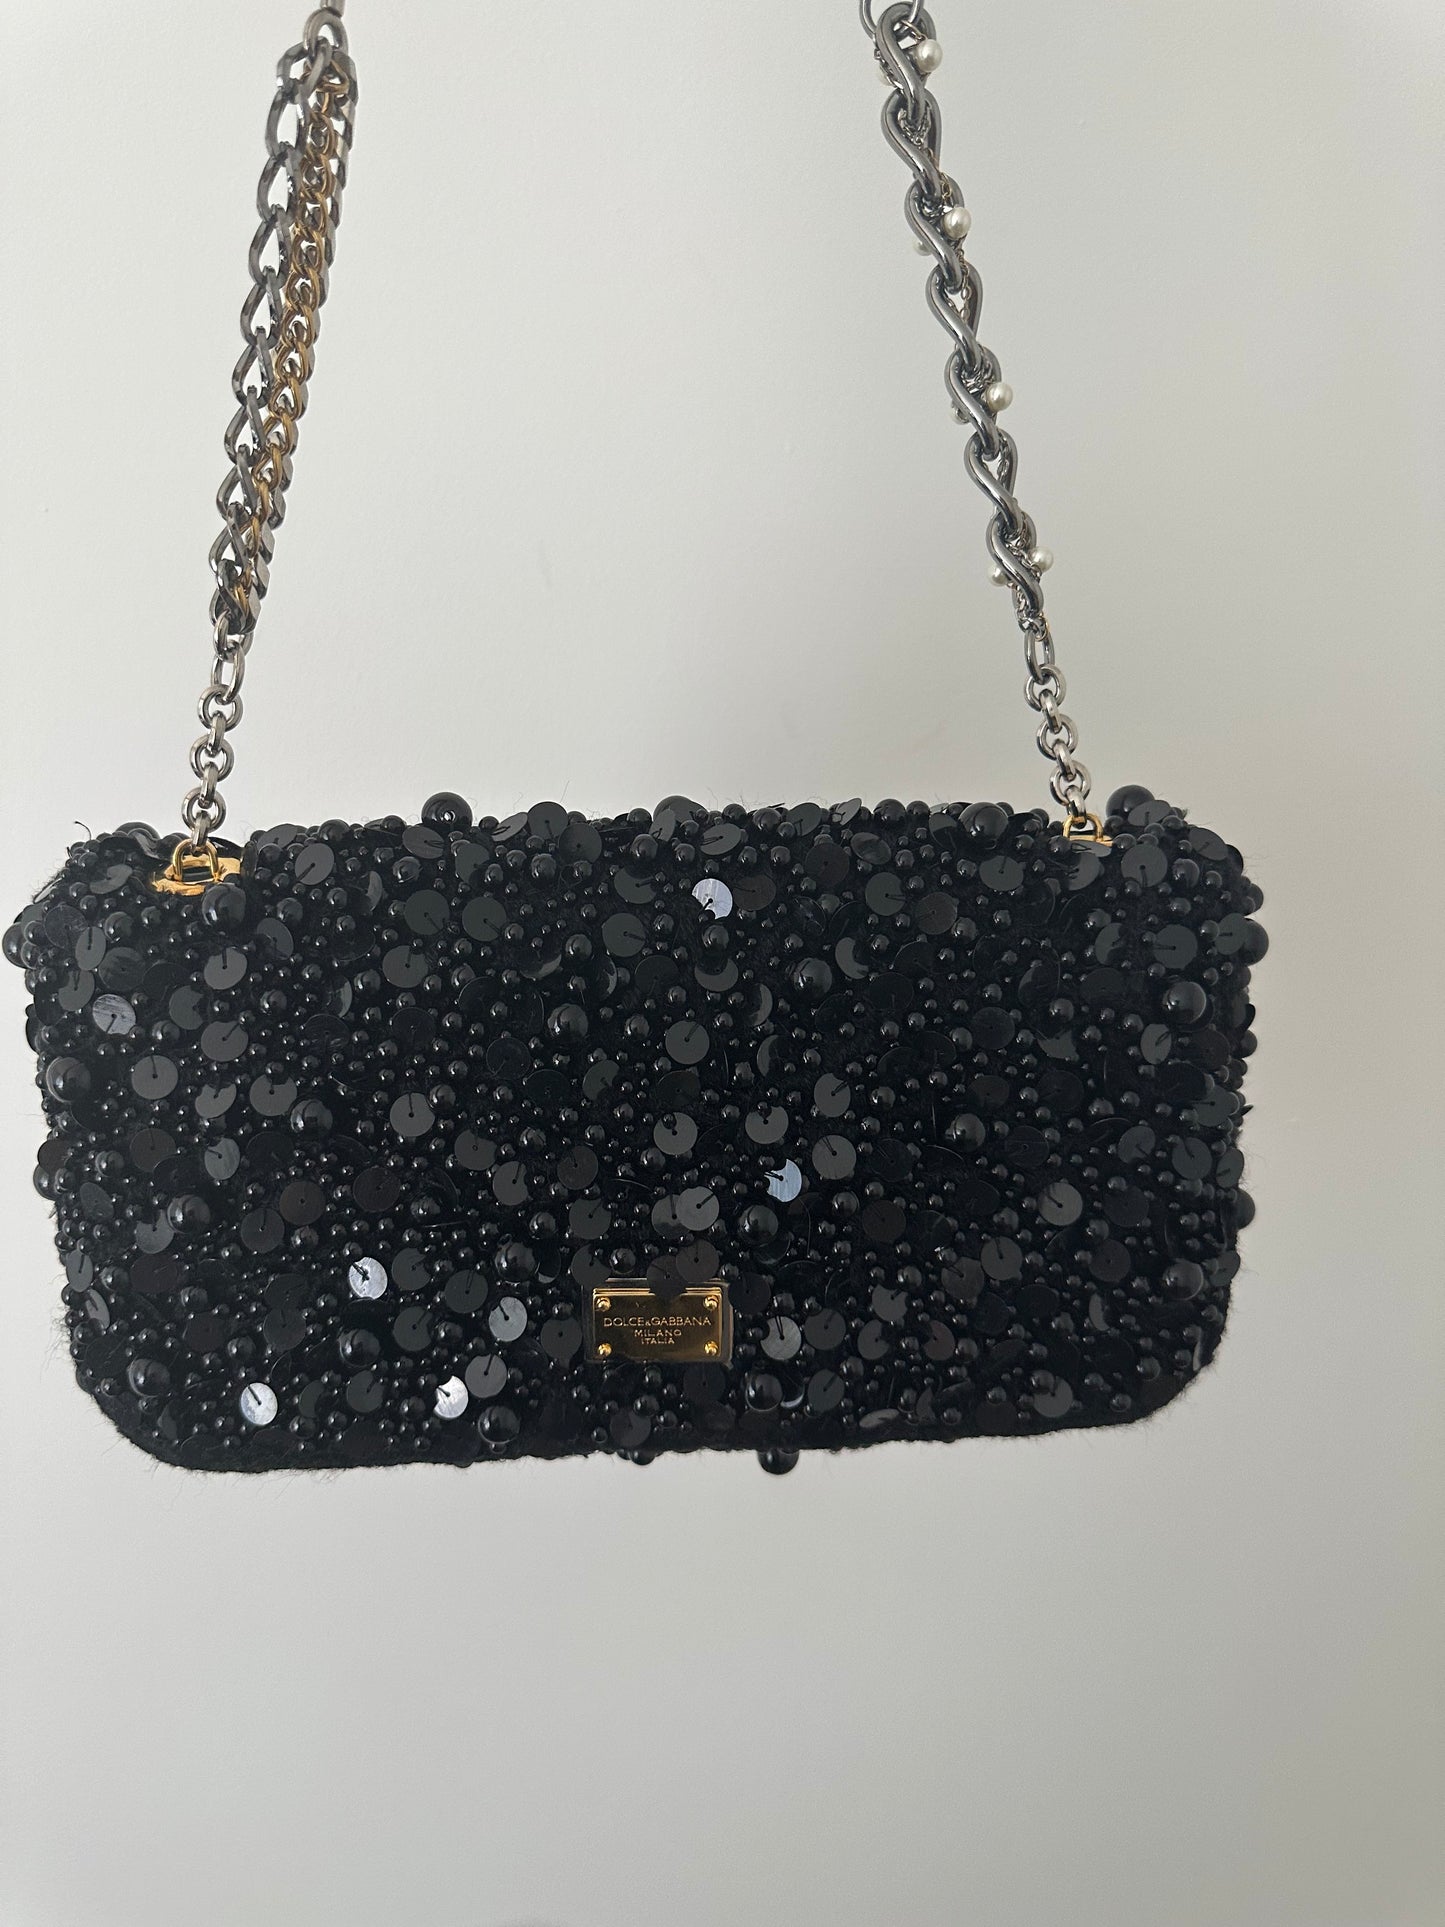 RARE Vintage Dolce & Gabbana Black Beaded Evening/Shoulder Bag